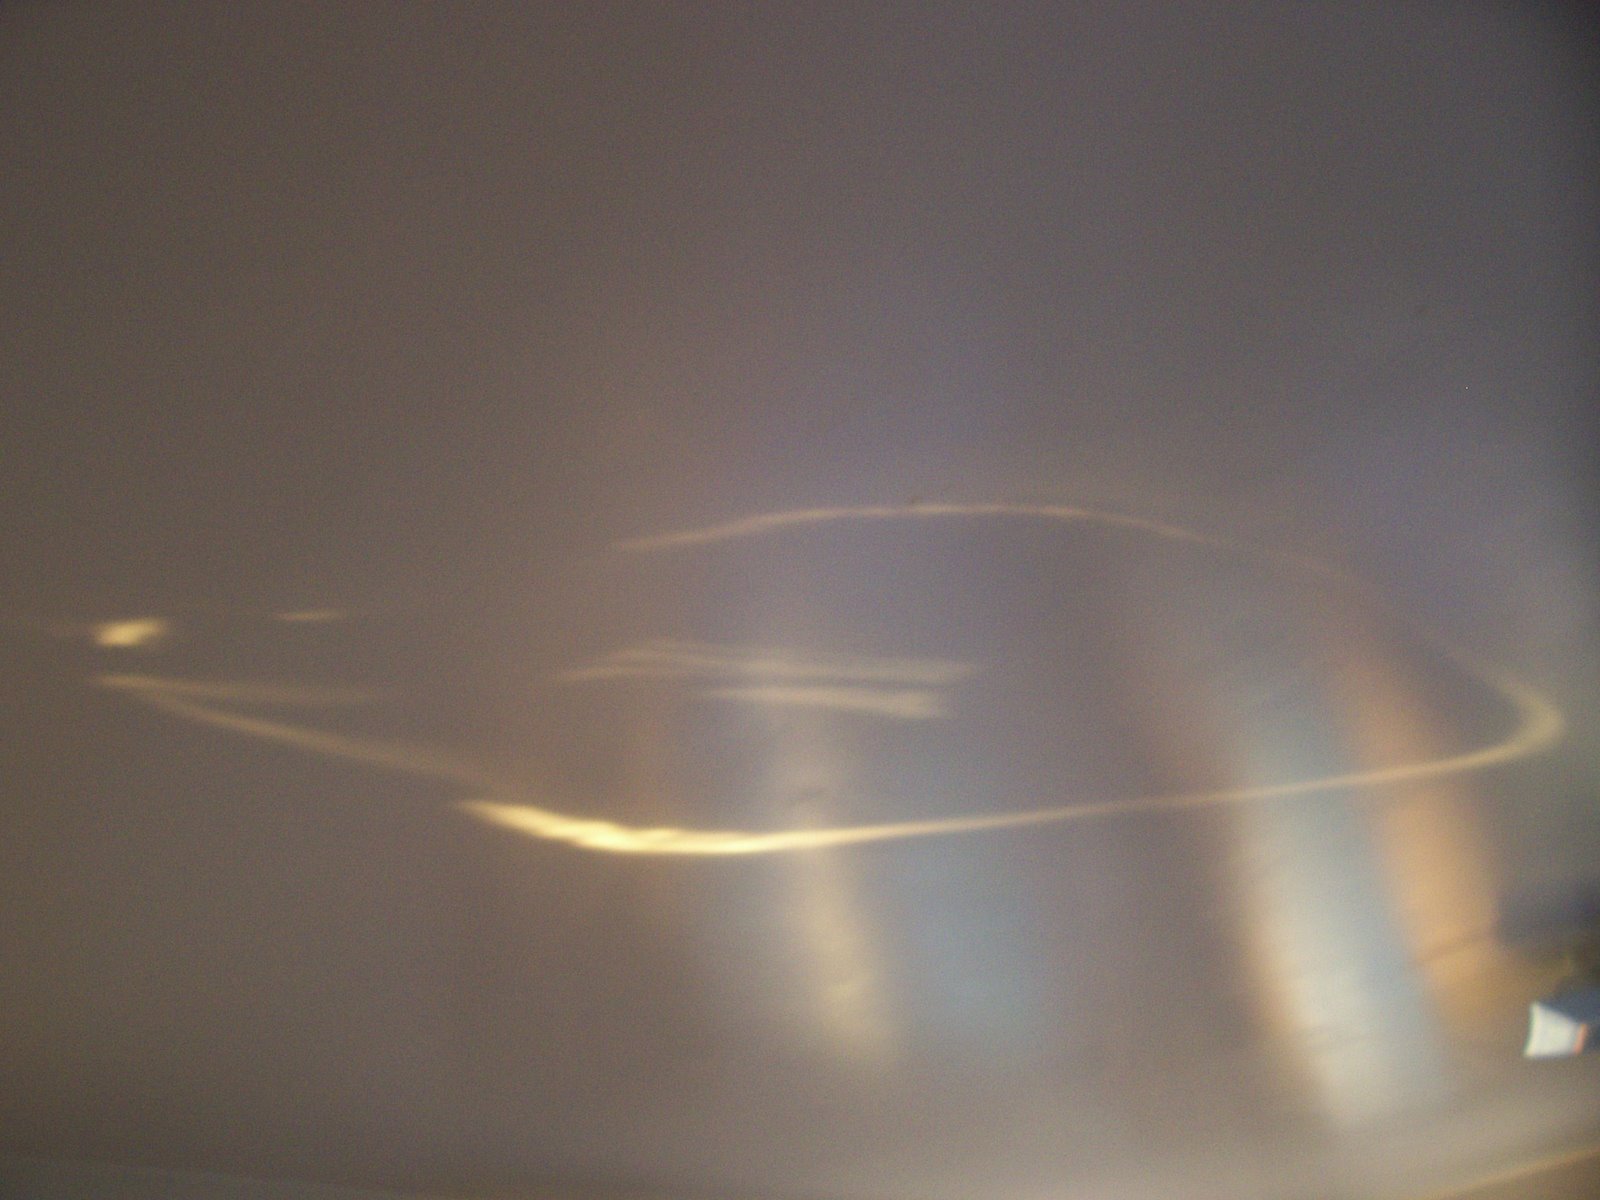 [weird+light+on+ceiling.jpg]